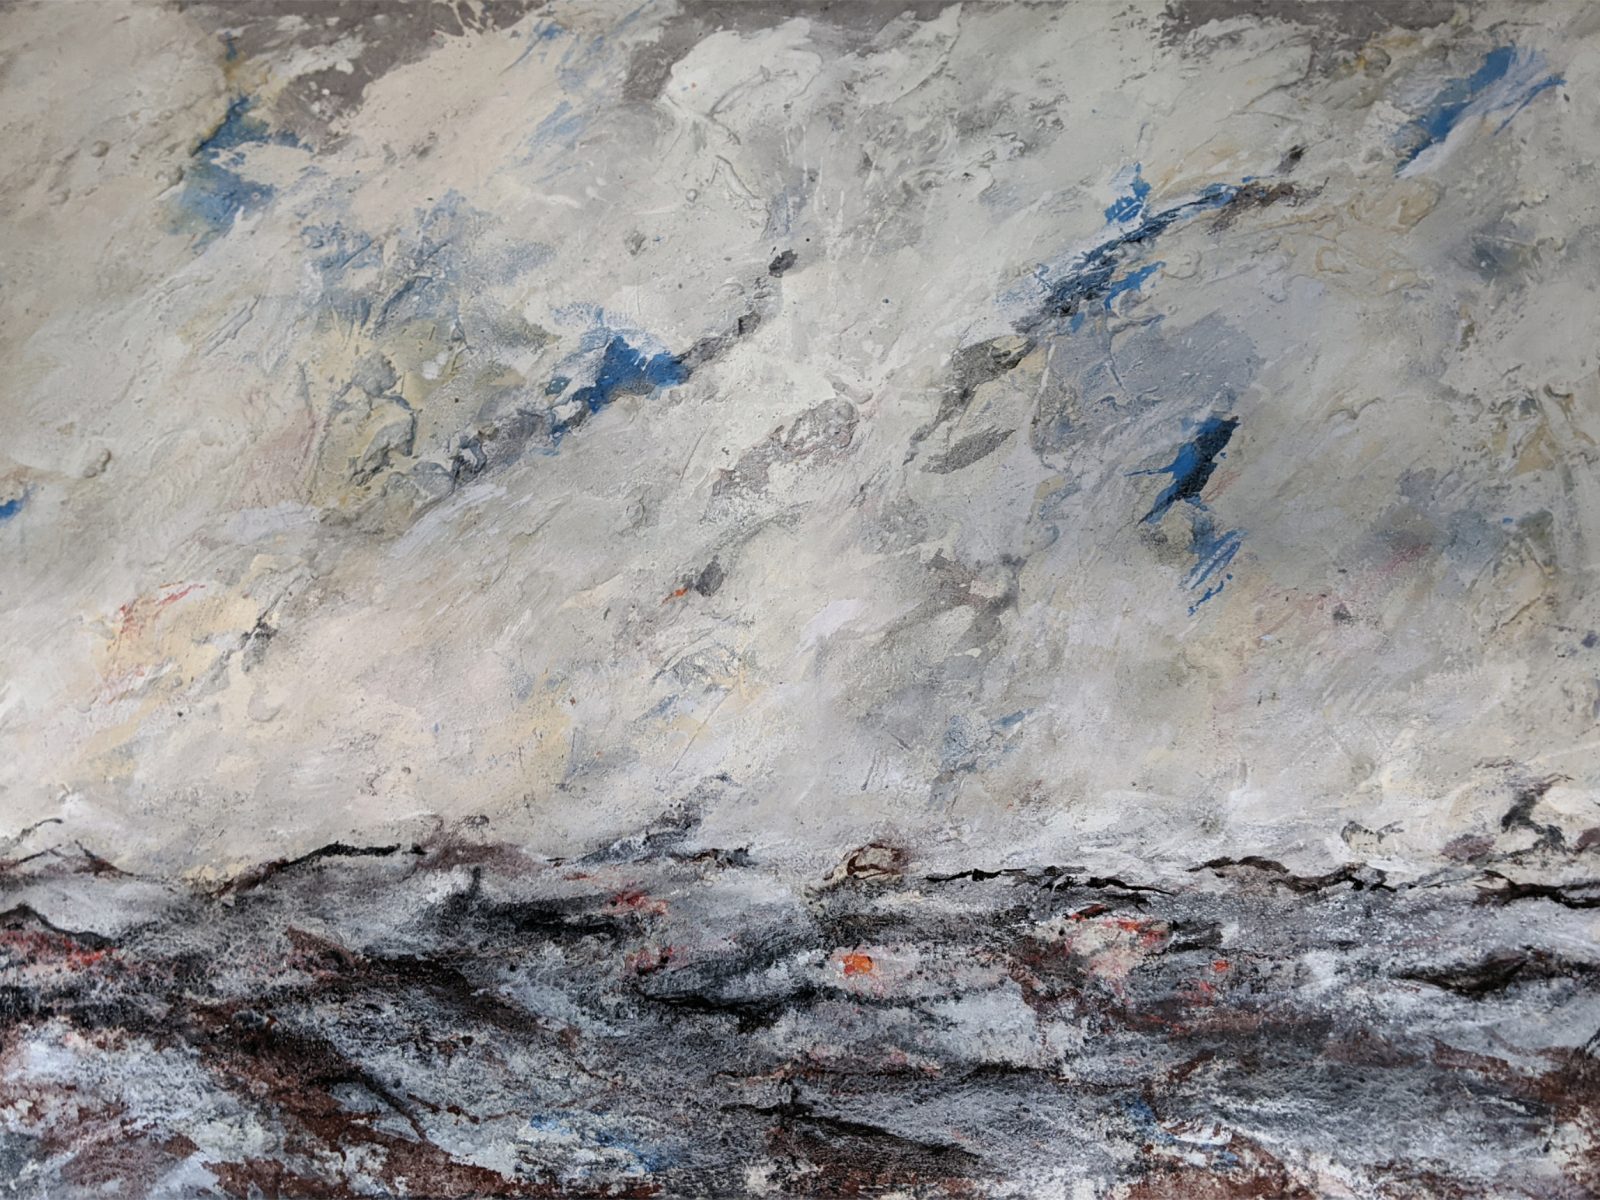 Manfred Fischer 2018 Landschaft IV, Malerei auf Leinwand, 110 x 160 cm